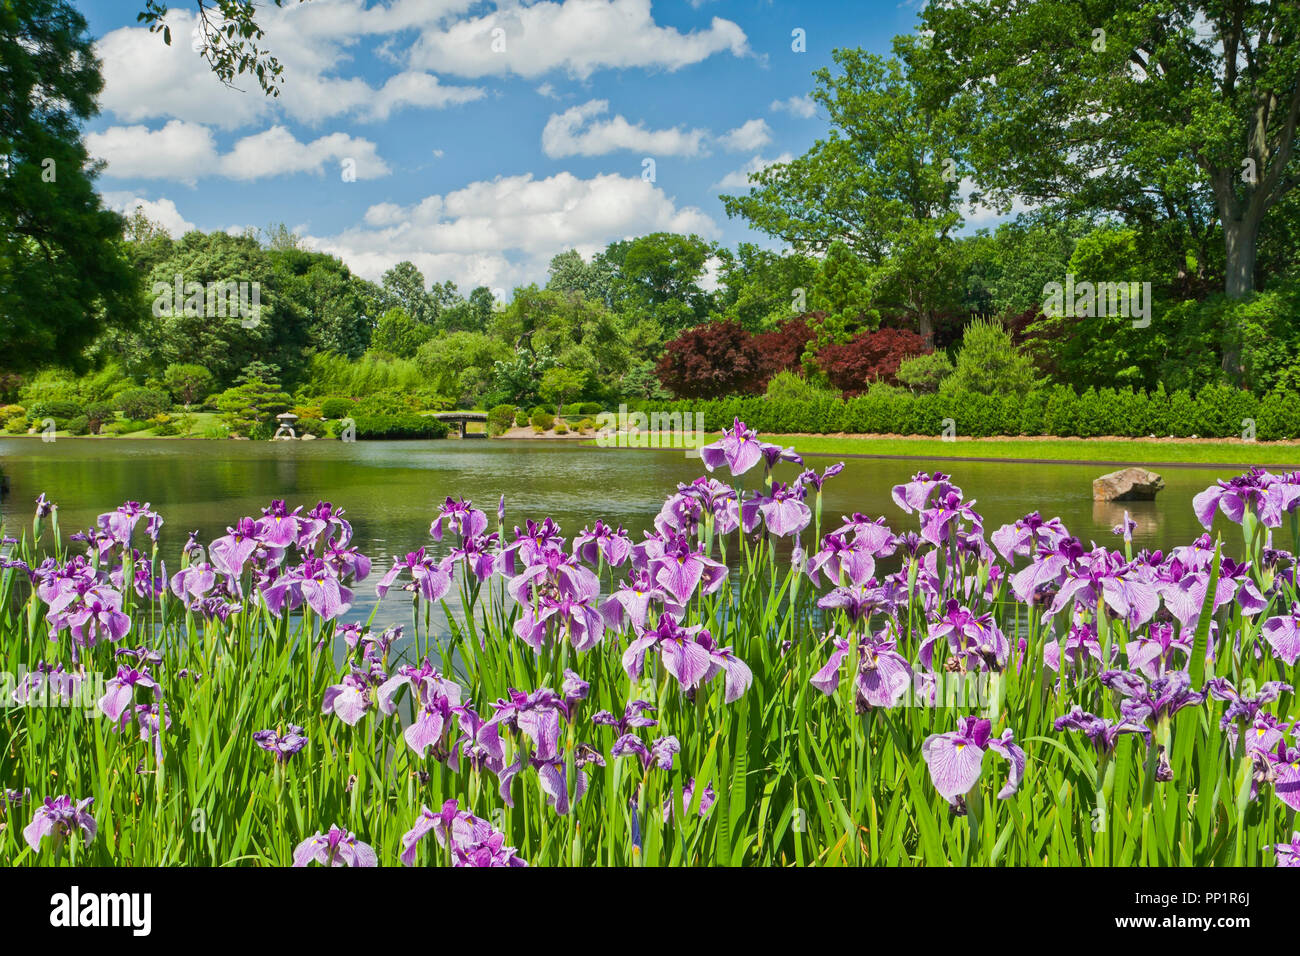 ST. LOUIS - Juni 12: Helle geschwollene Wolken im blauen Himmel über rosa Iris am See im Japanischen Garten an der Missouri Botanical Garden auf einer Mitte Stockfoto